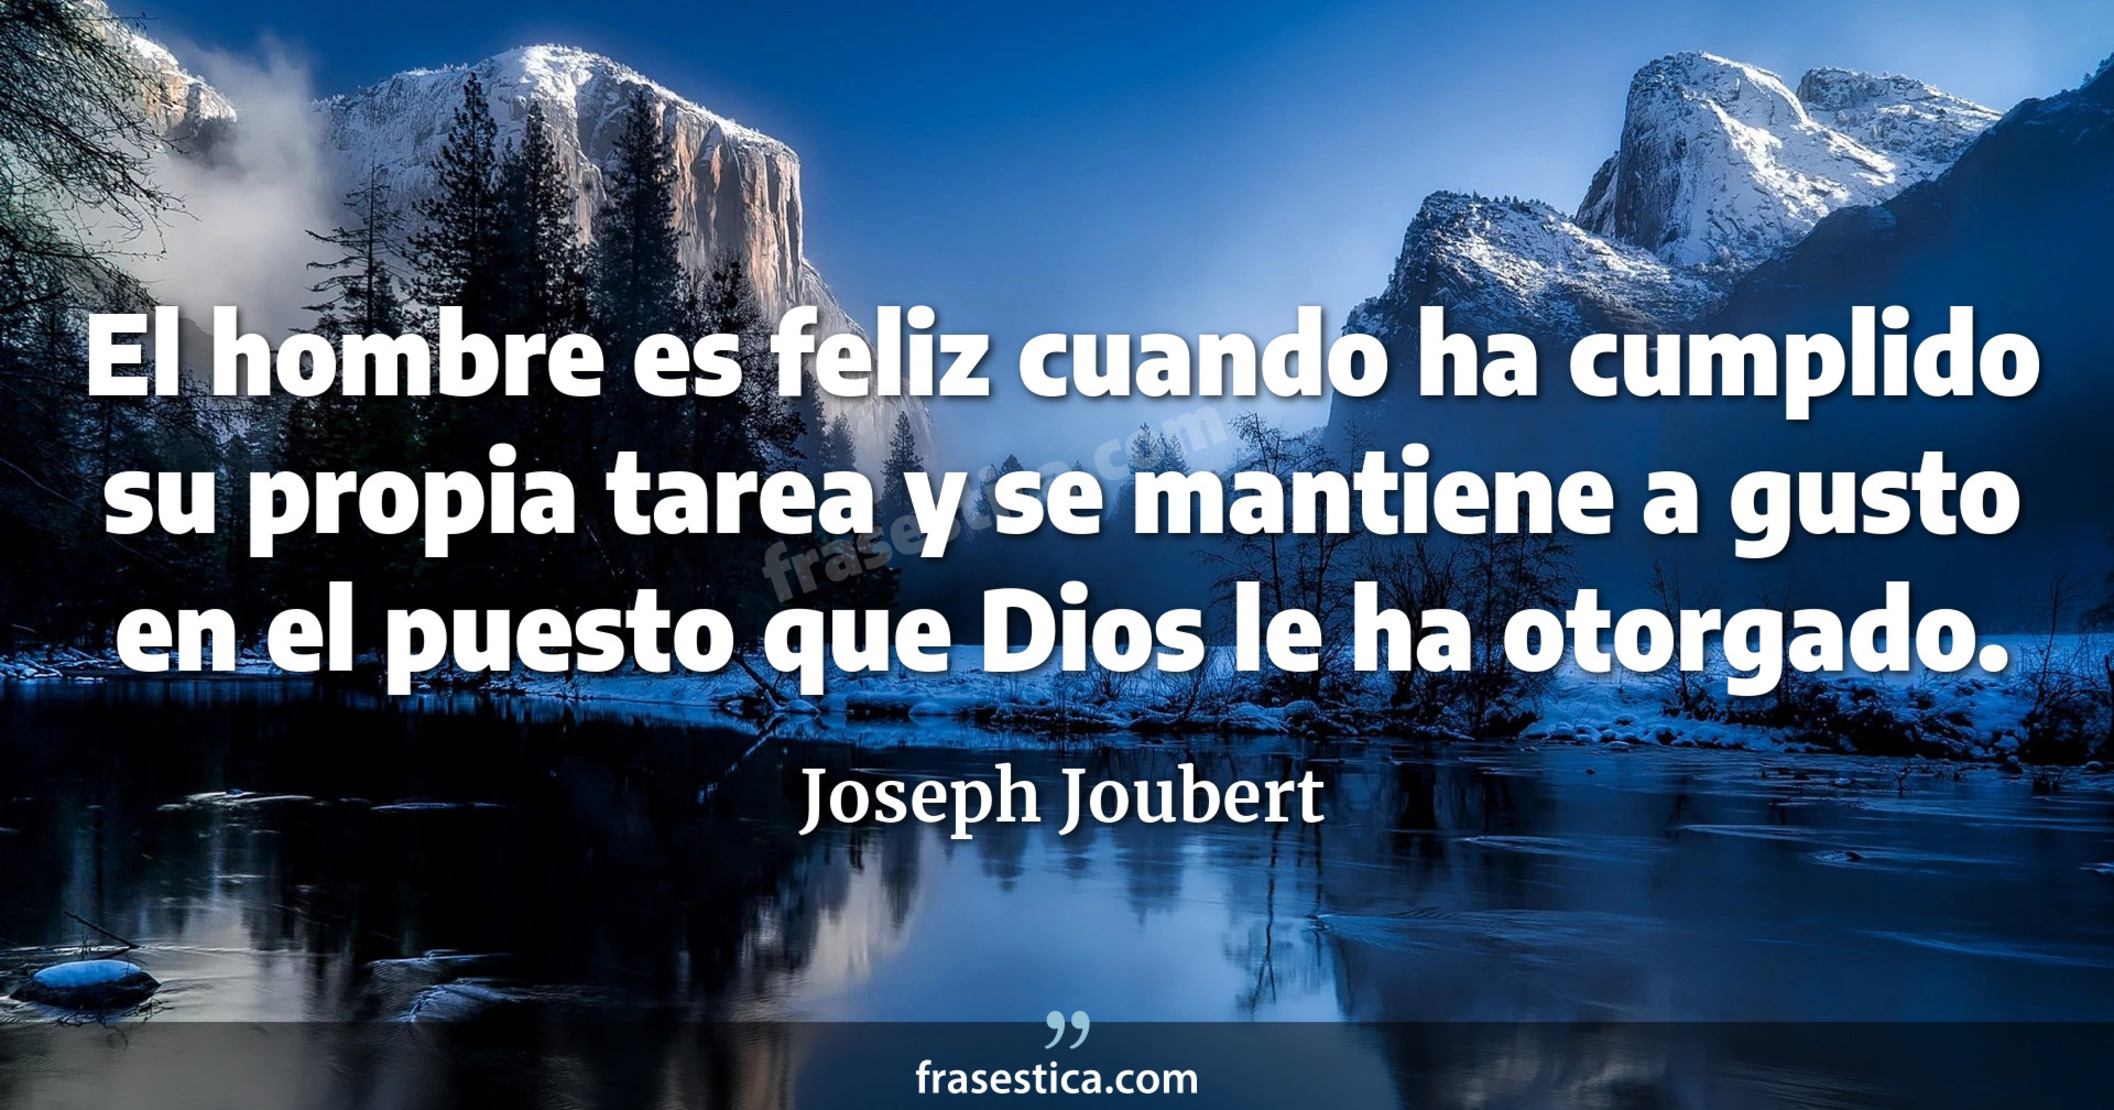 El hombre es feliz cuando ha cumplido su propia tarea y se mantiene a gusto en el puesto que Dios le ha otorgado. - Joseph Joubert